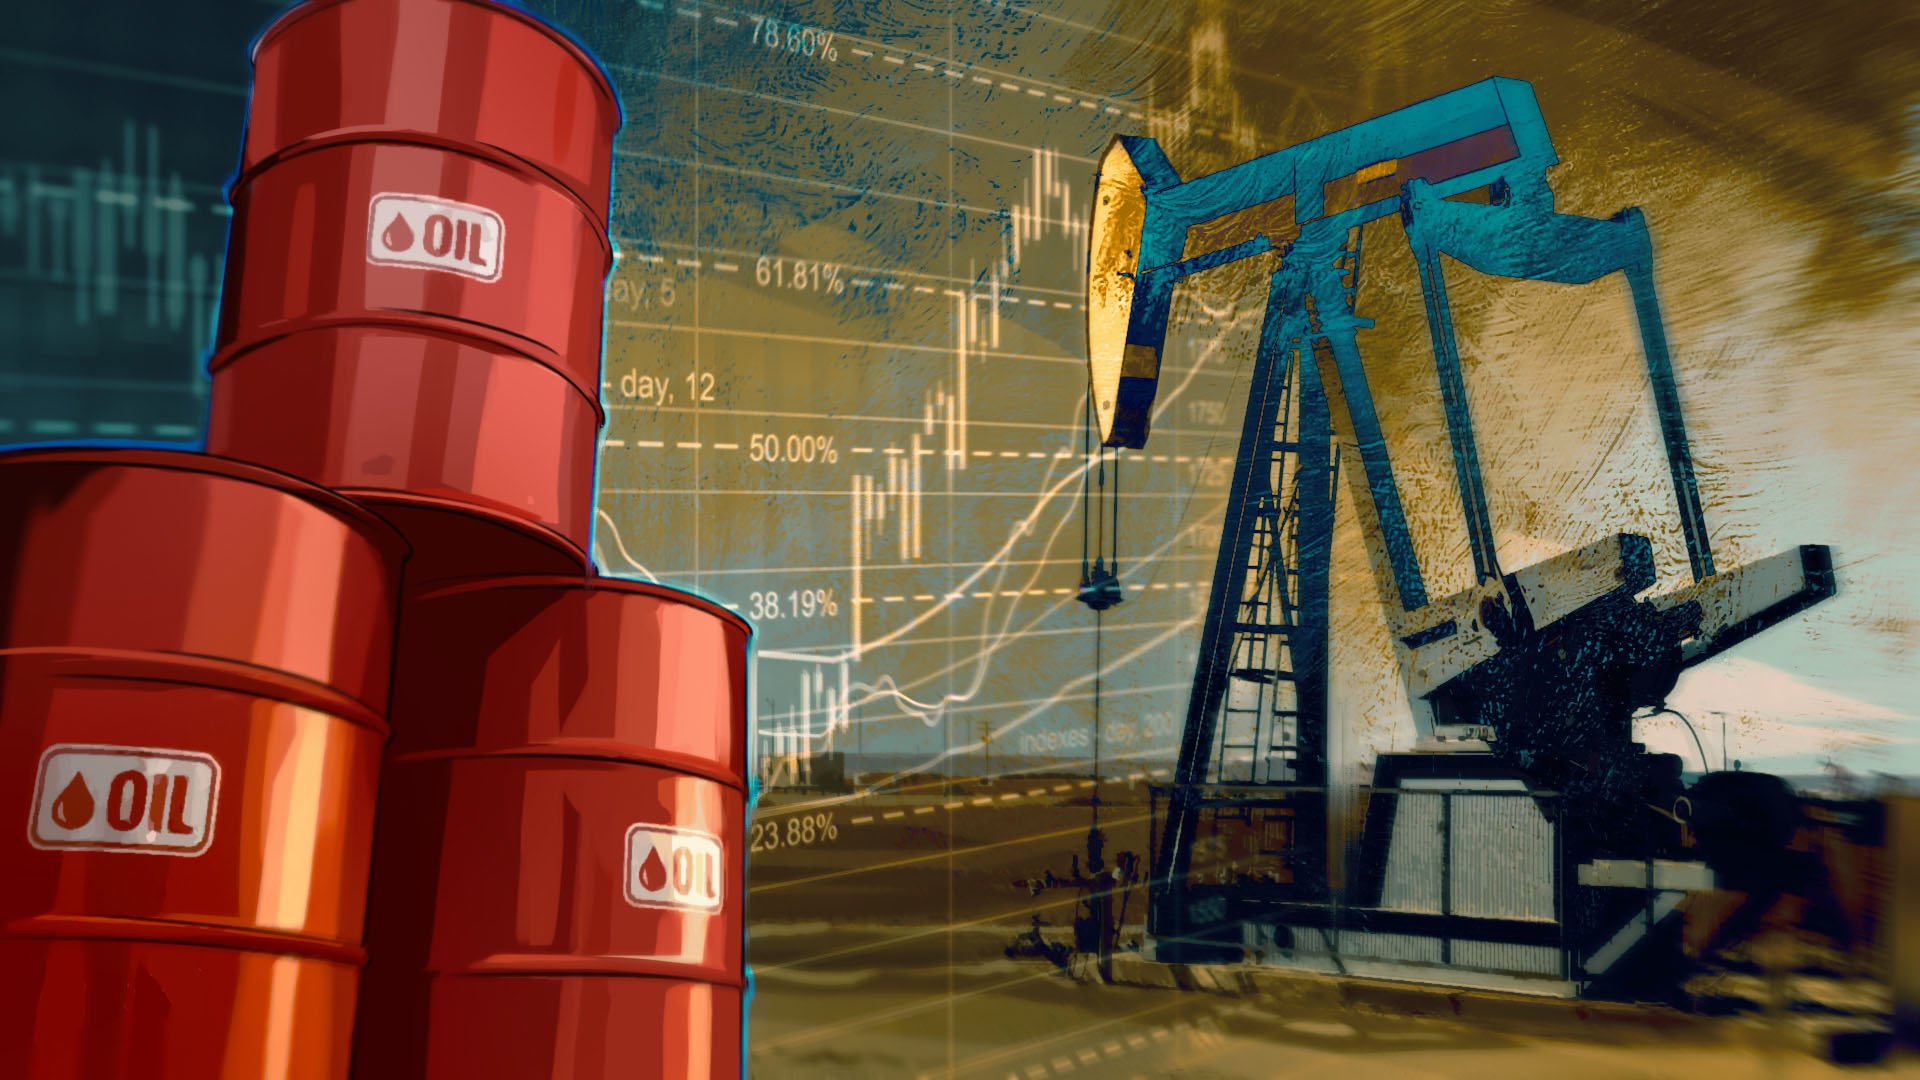 Brent petrolün varil fiyatı 85,04 dolar